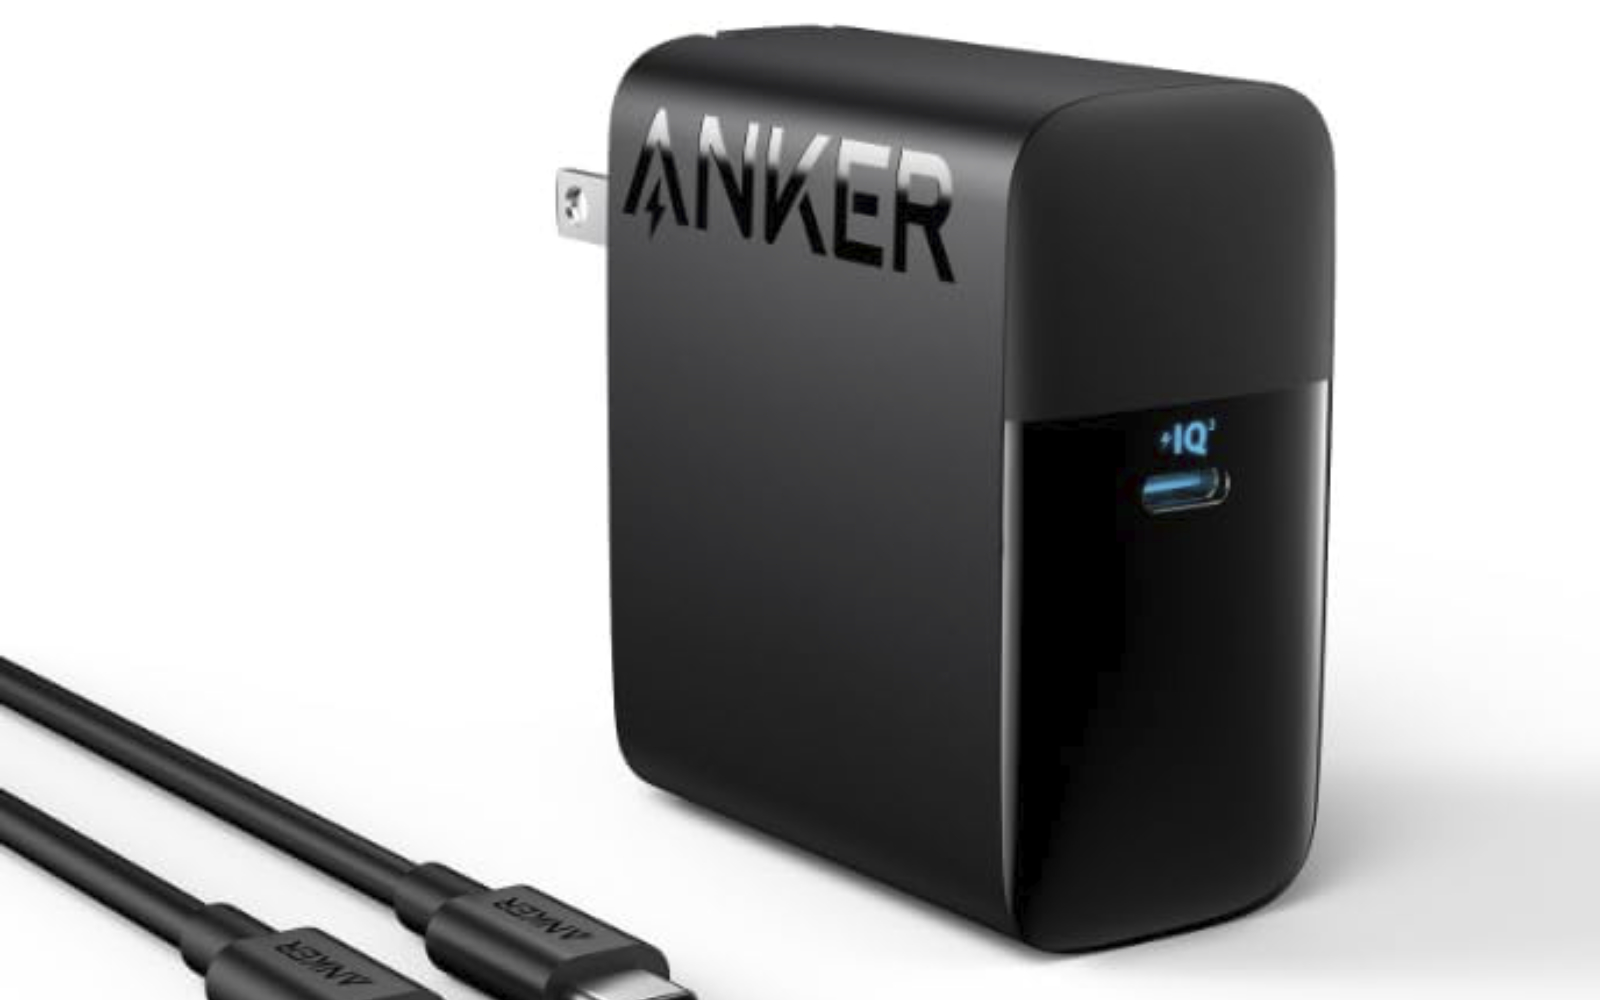 Anker-317-charger.jpg